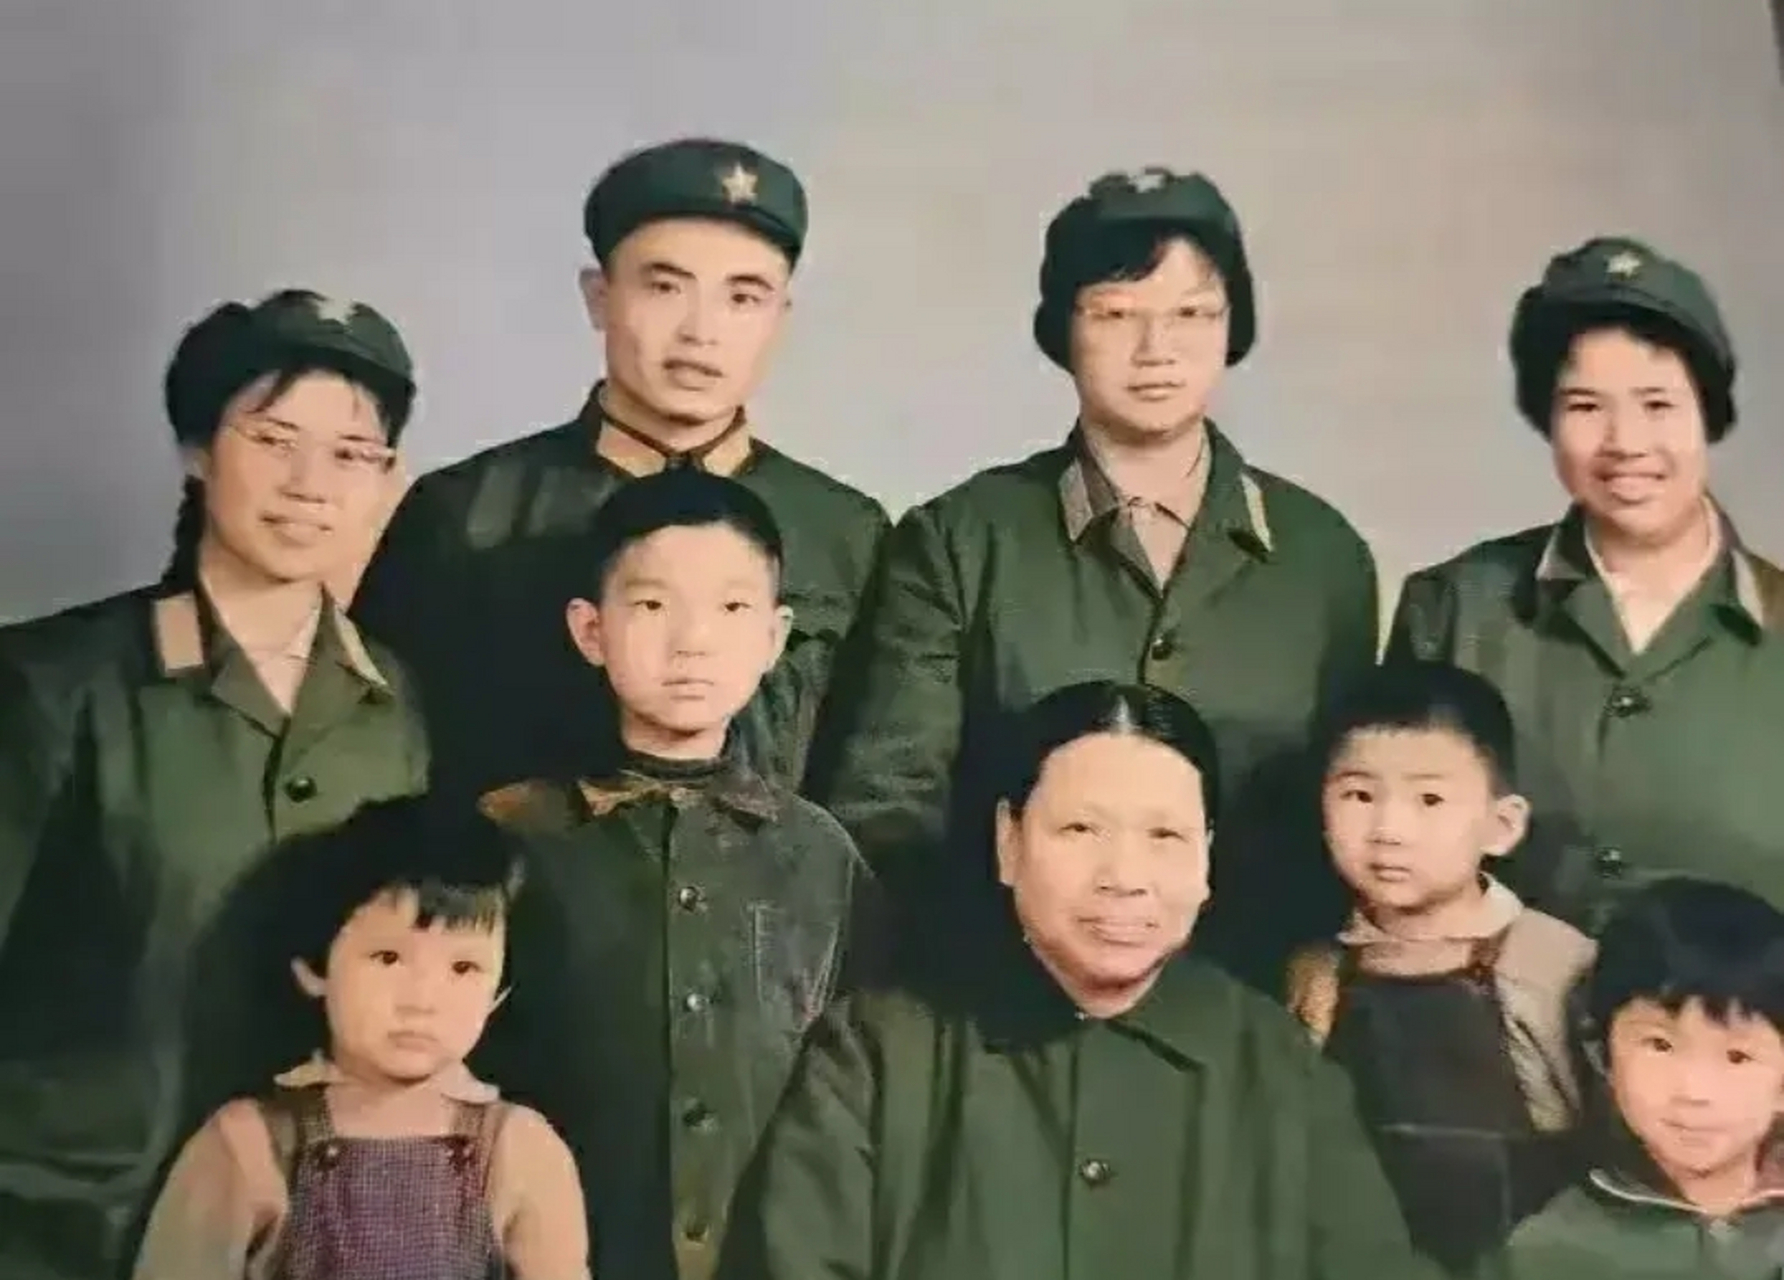 这是1976年,张文秋和她的女儿,外孙一起拍的照片